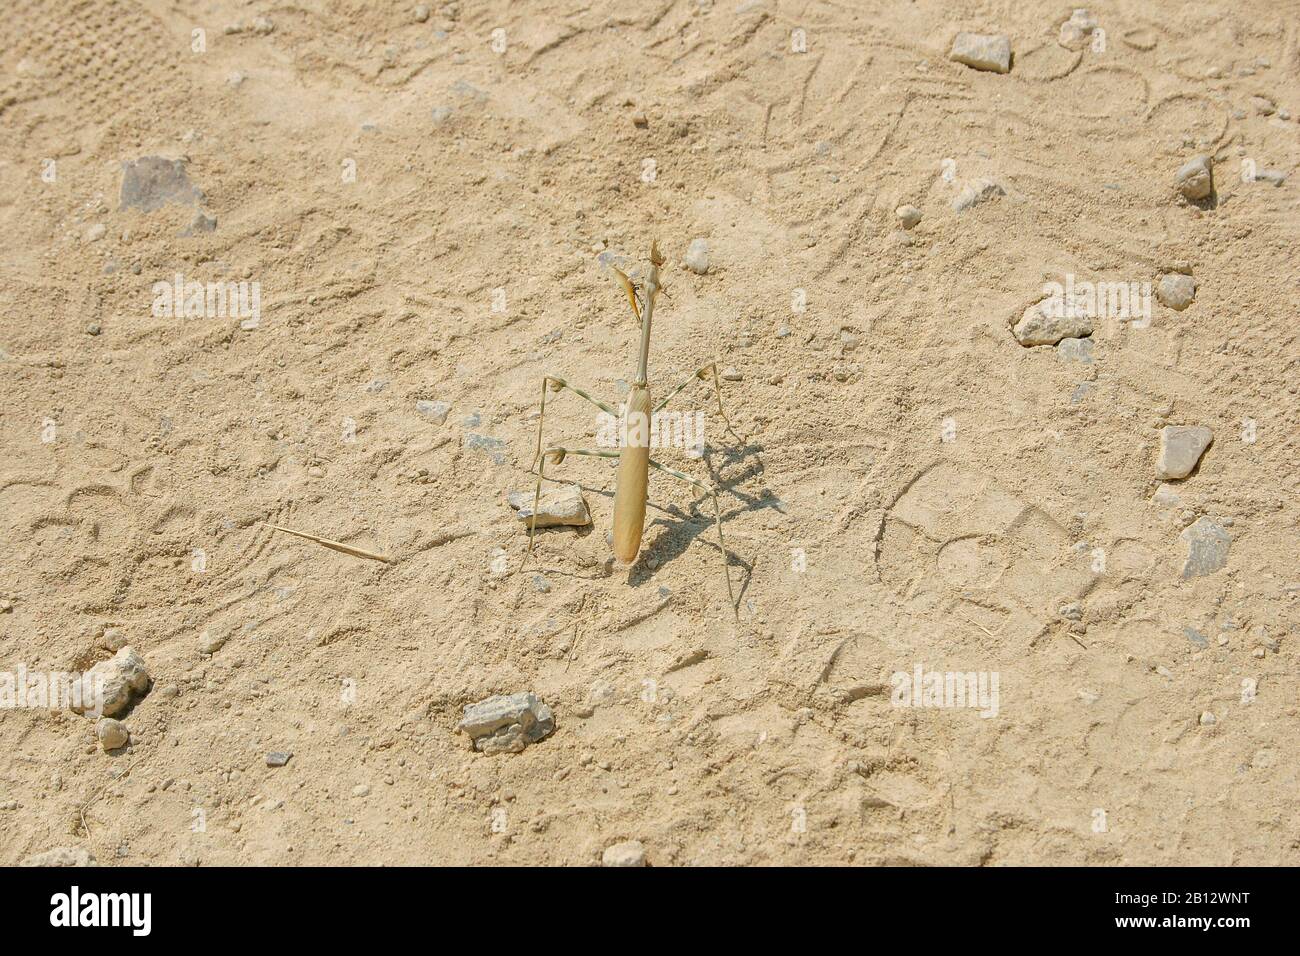 Insetto solitario bastone, phasmatodea, nel deserto in Namibia Foto Stock